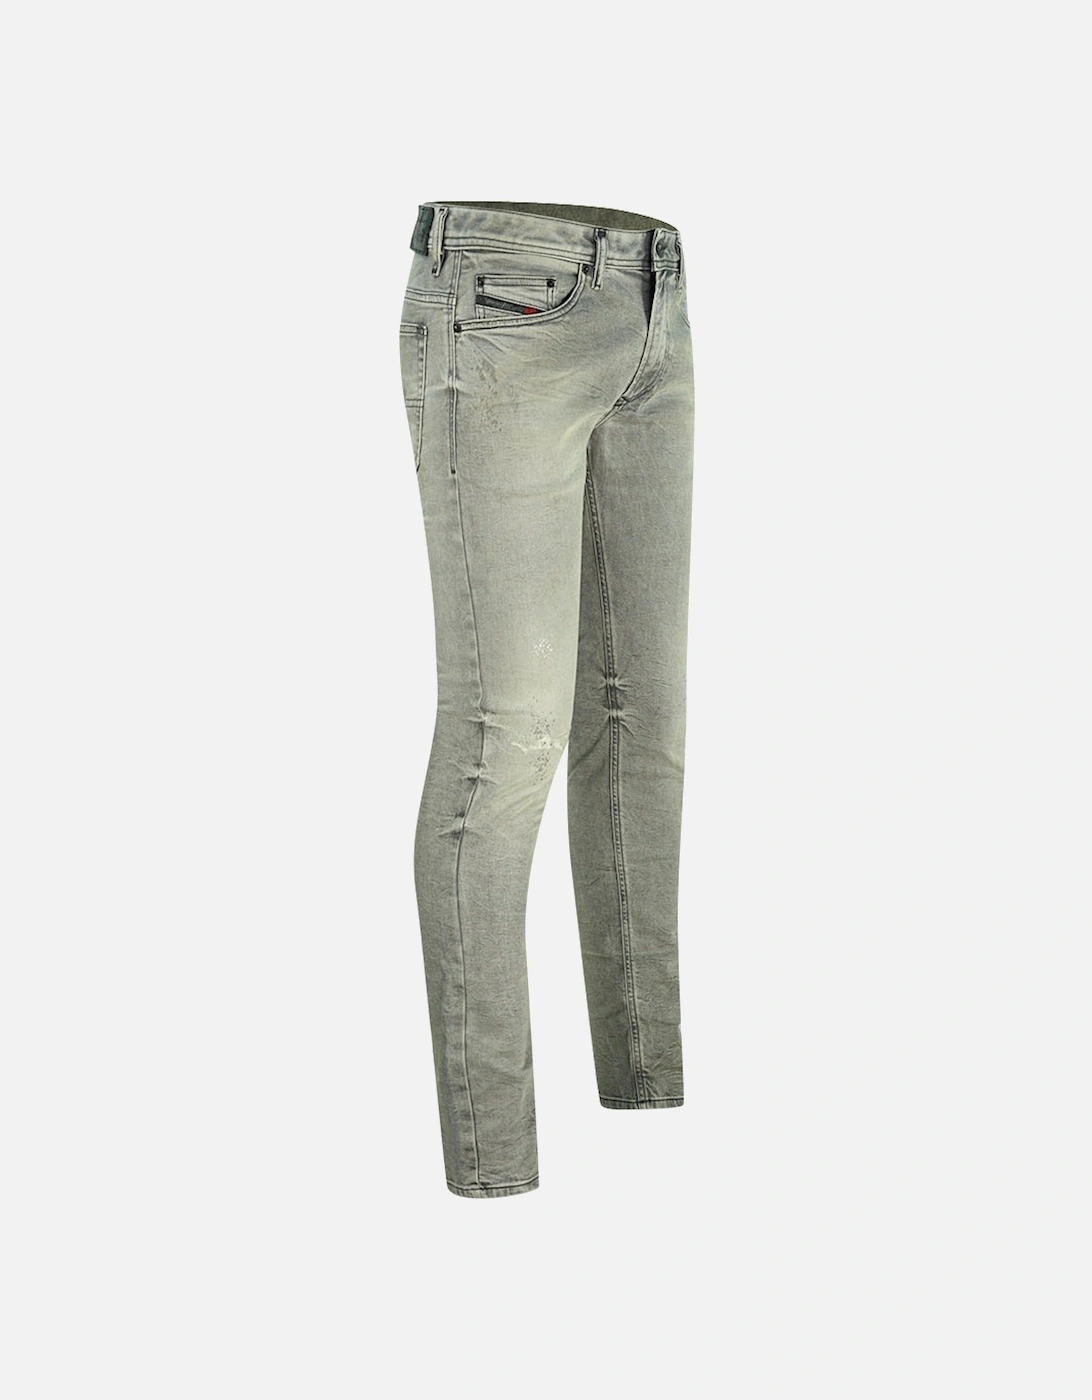 Thavar-XP R99J6 Jeans